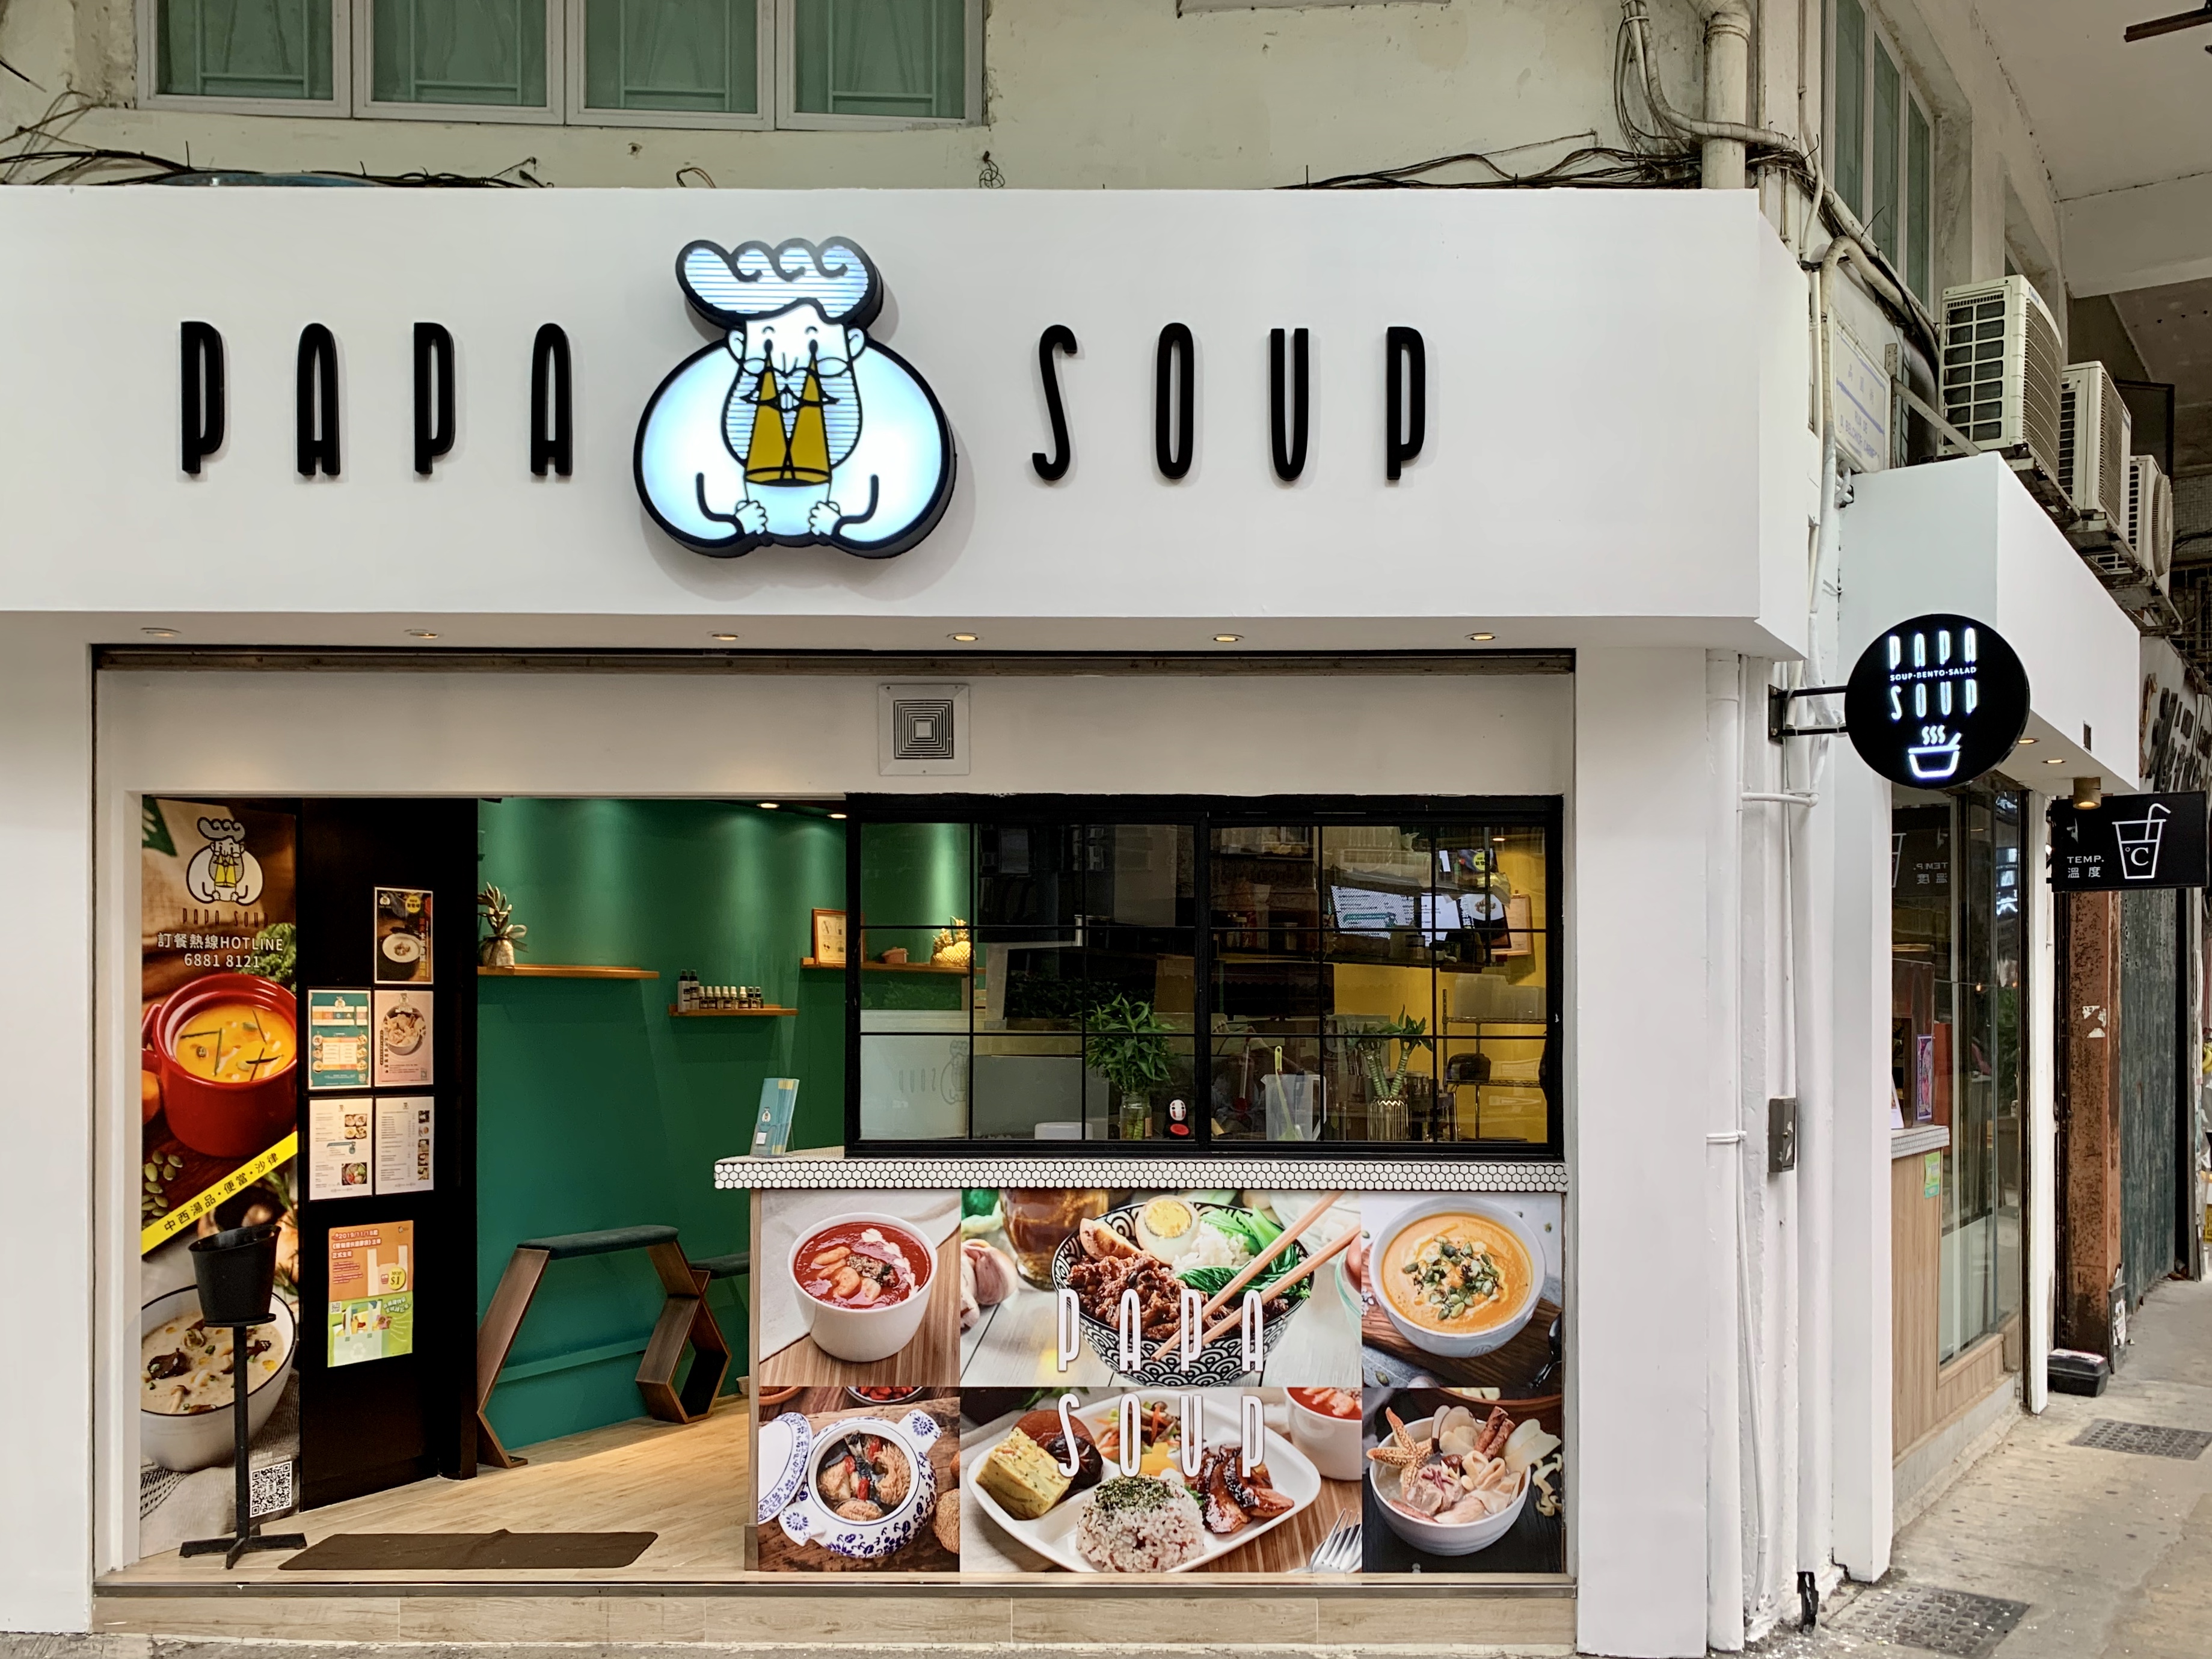 Papa Soup Frontdoor Shot Macau Lifestyle Camões Garden coffee shop